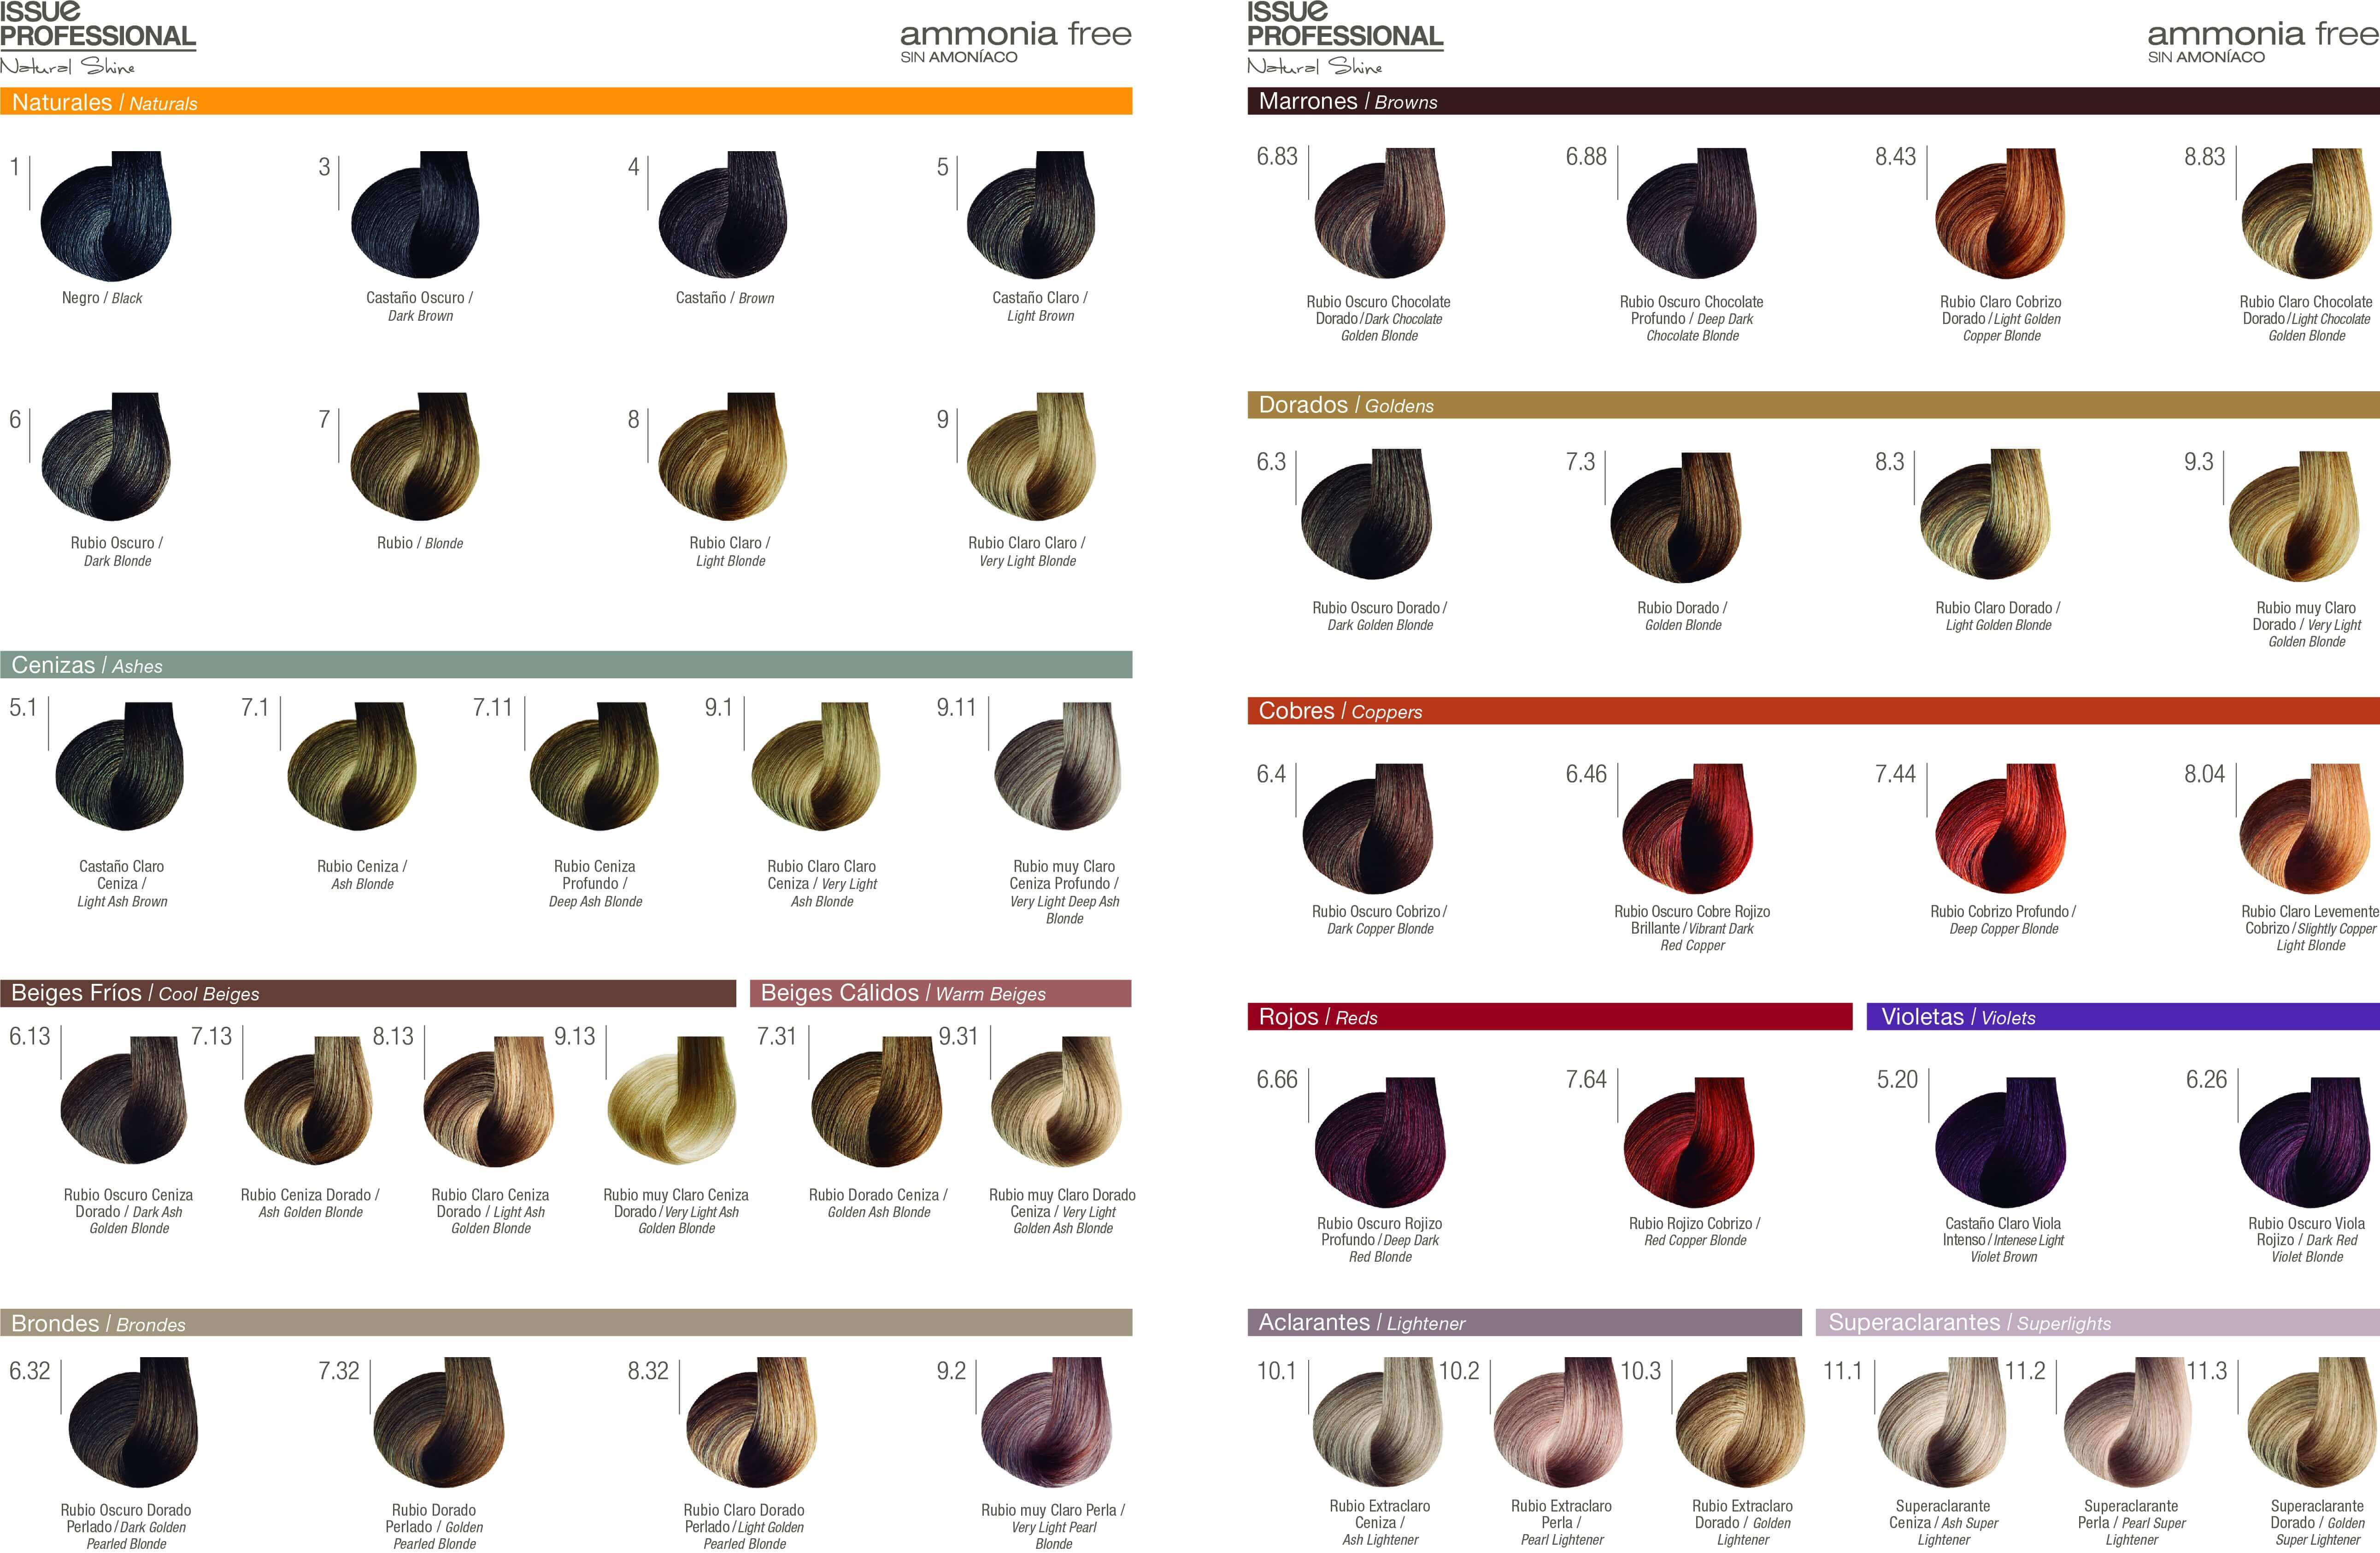 Tintura Issue Carta De Colores Rubios - Sample Web t